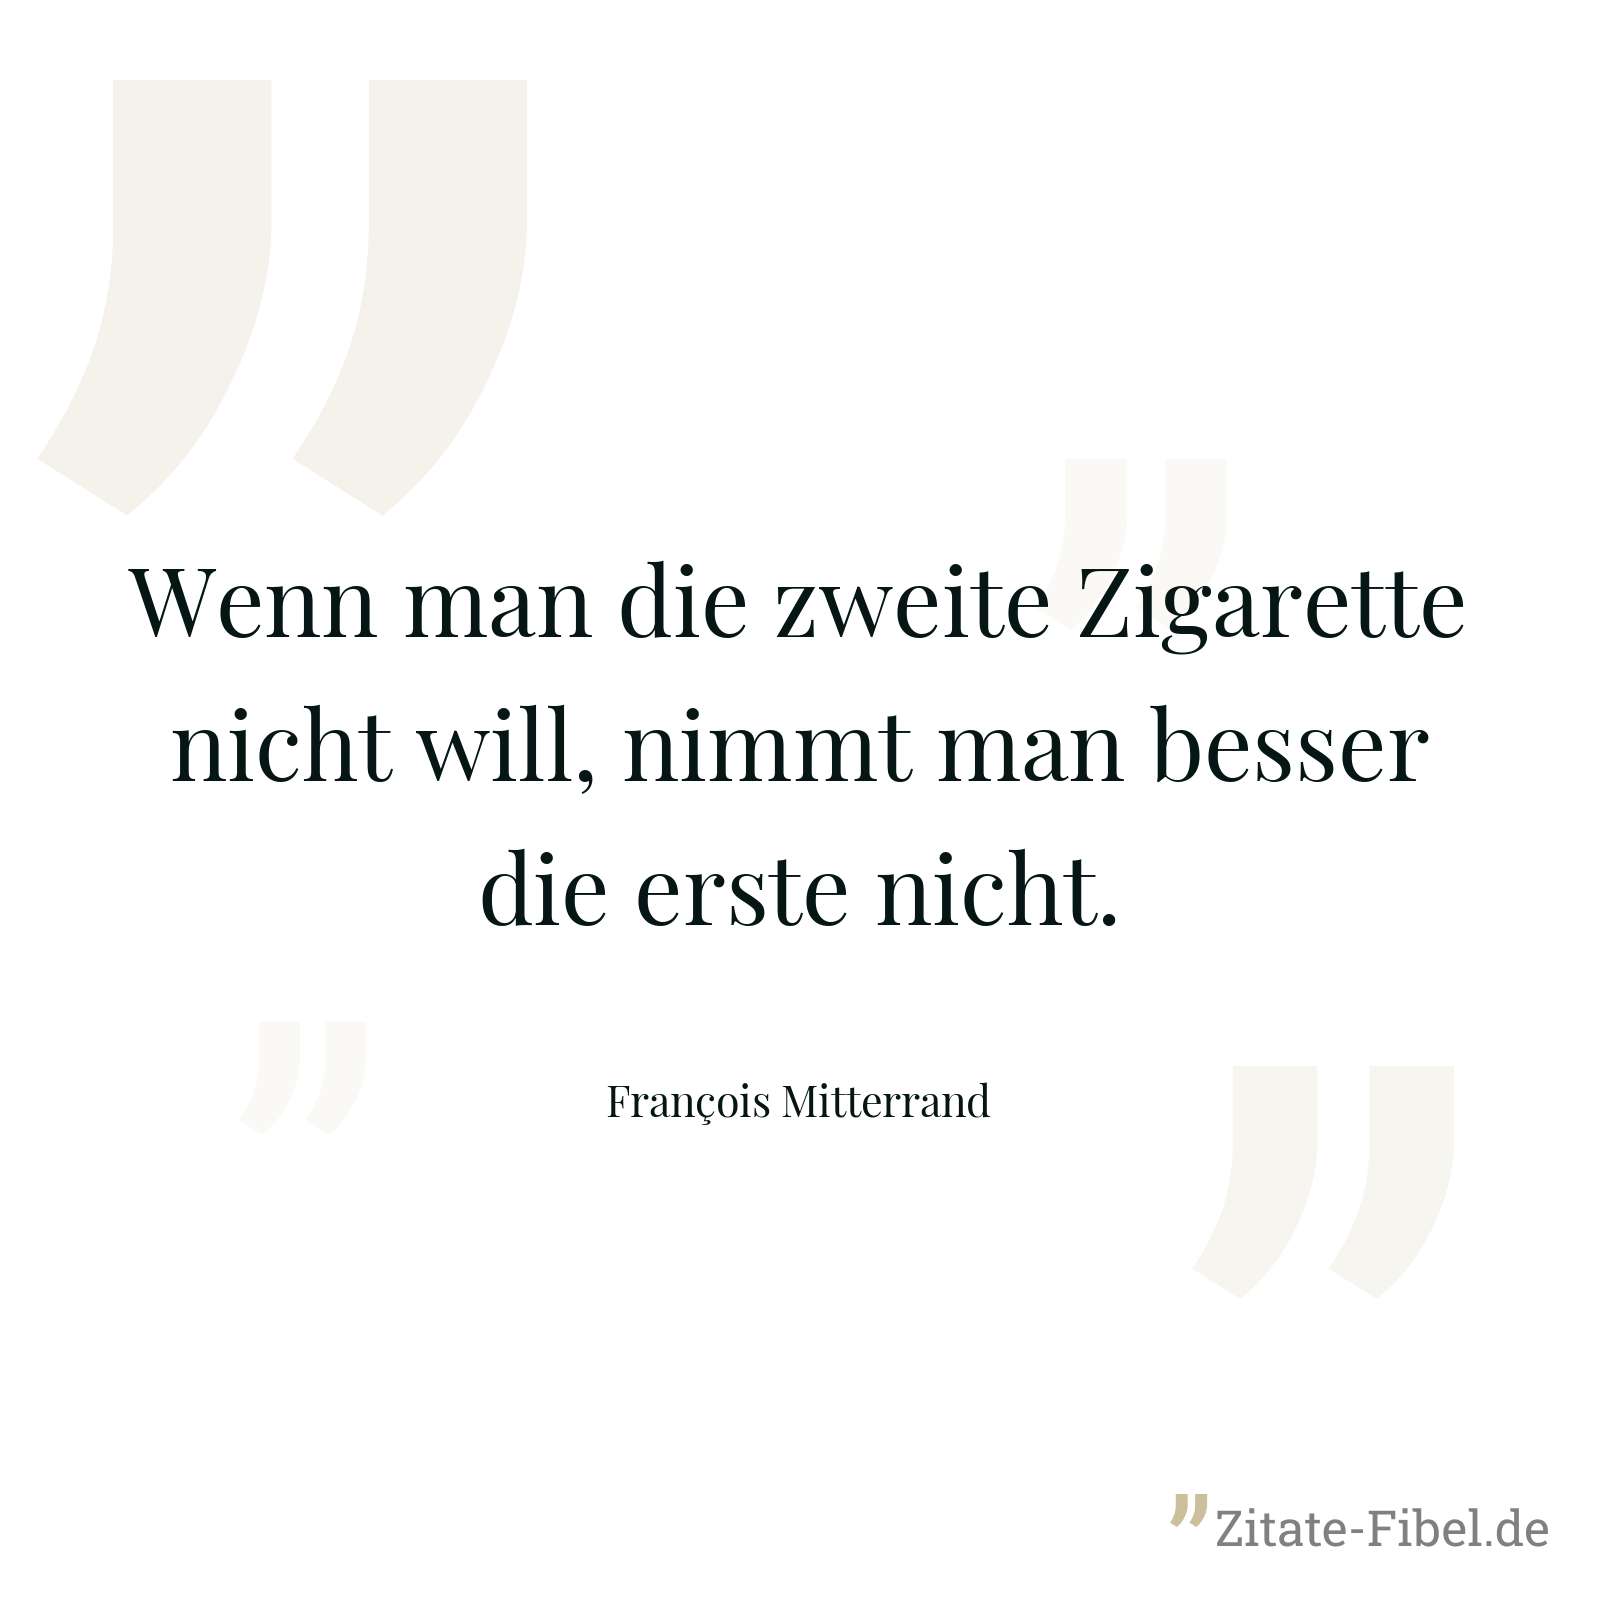 Wenn man die zweite Zigarette nicht will, nimmt man besser die erste nicht. - François Mitterrand